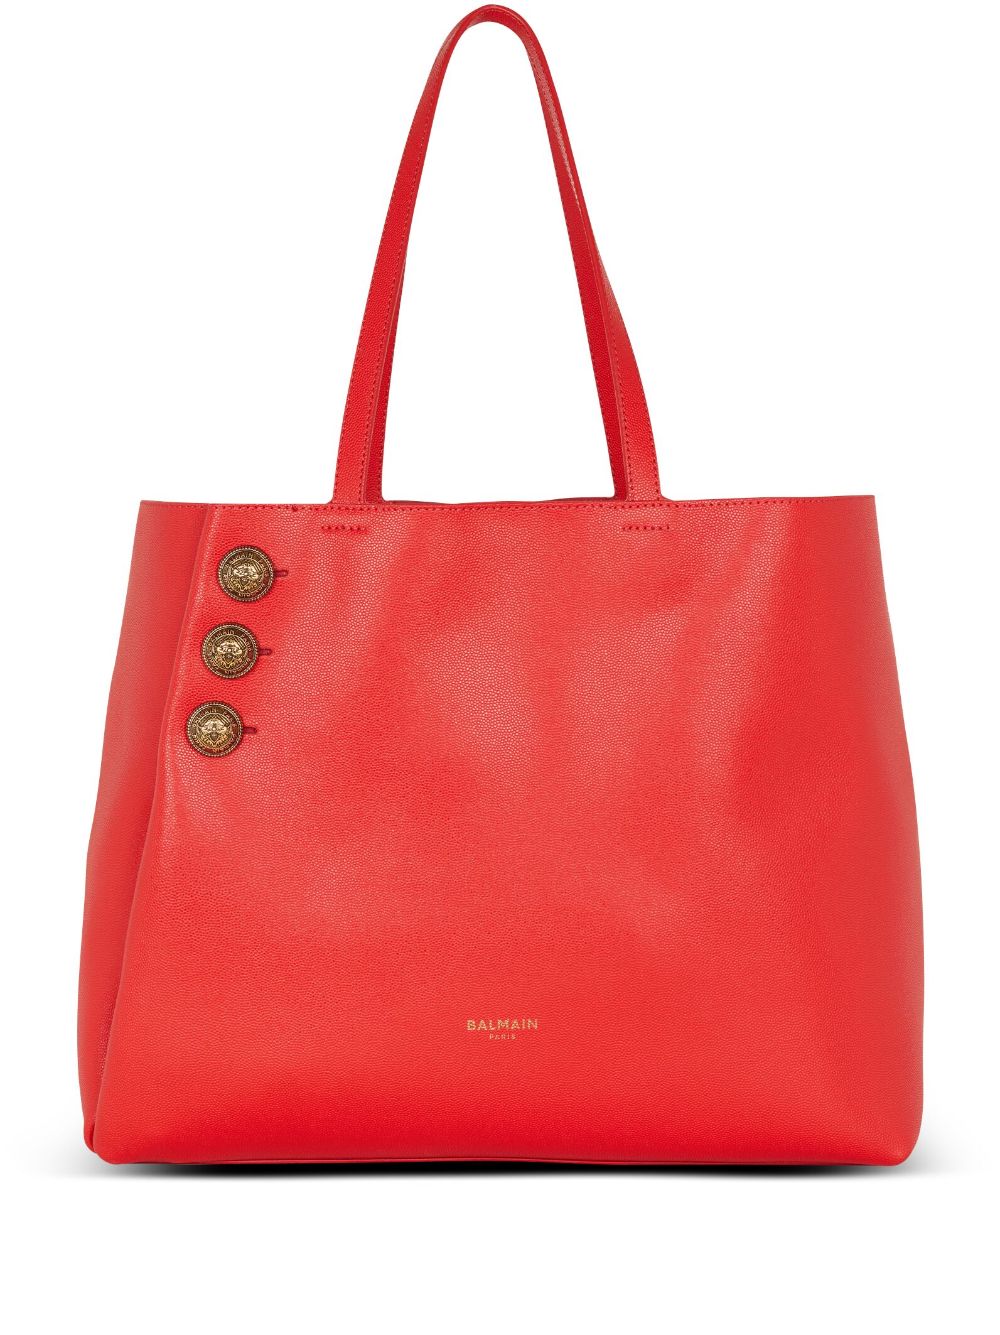 Balmain Emblème leather tote bag - Red von Balmain